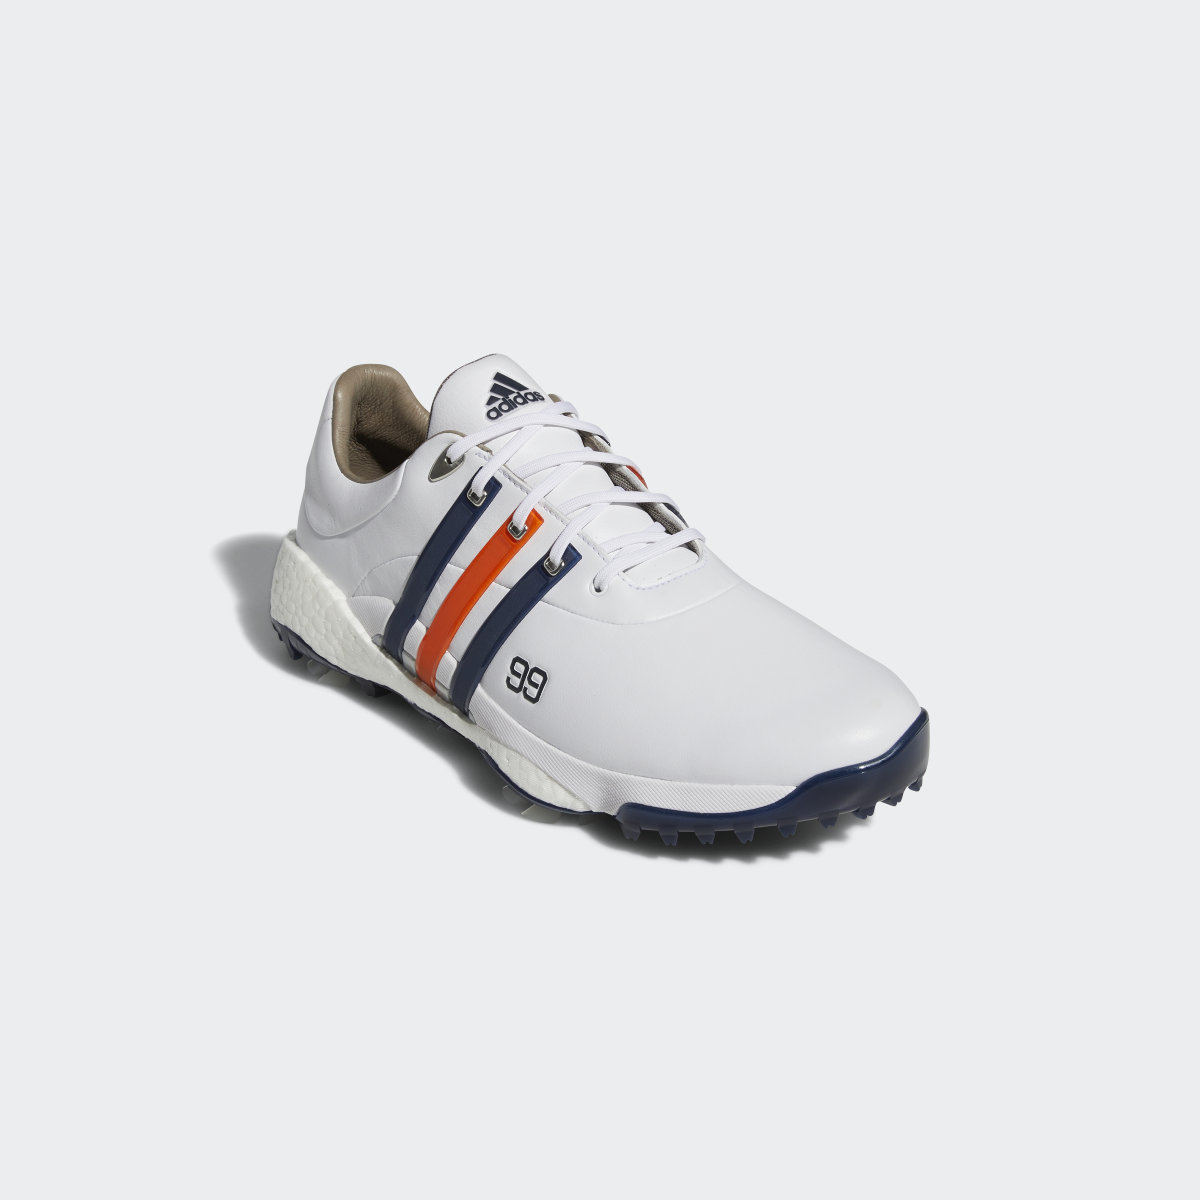 Adidas DJ Gretzky Tour360 22 Golf Shoes. 11